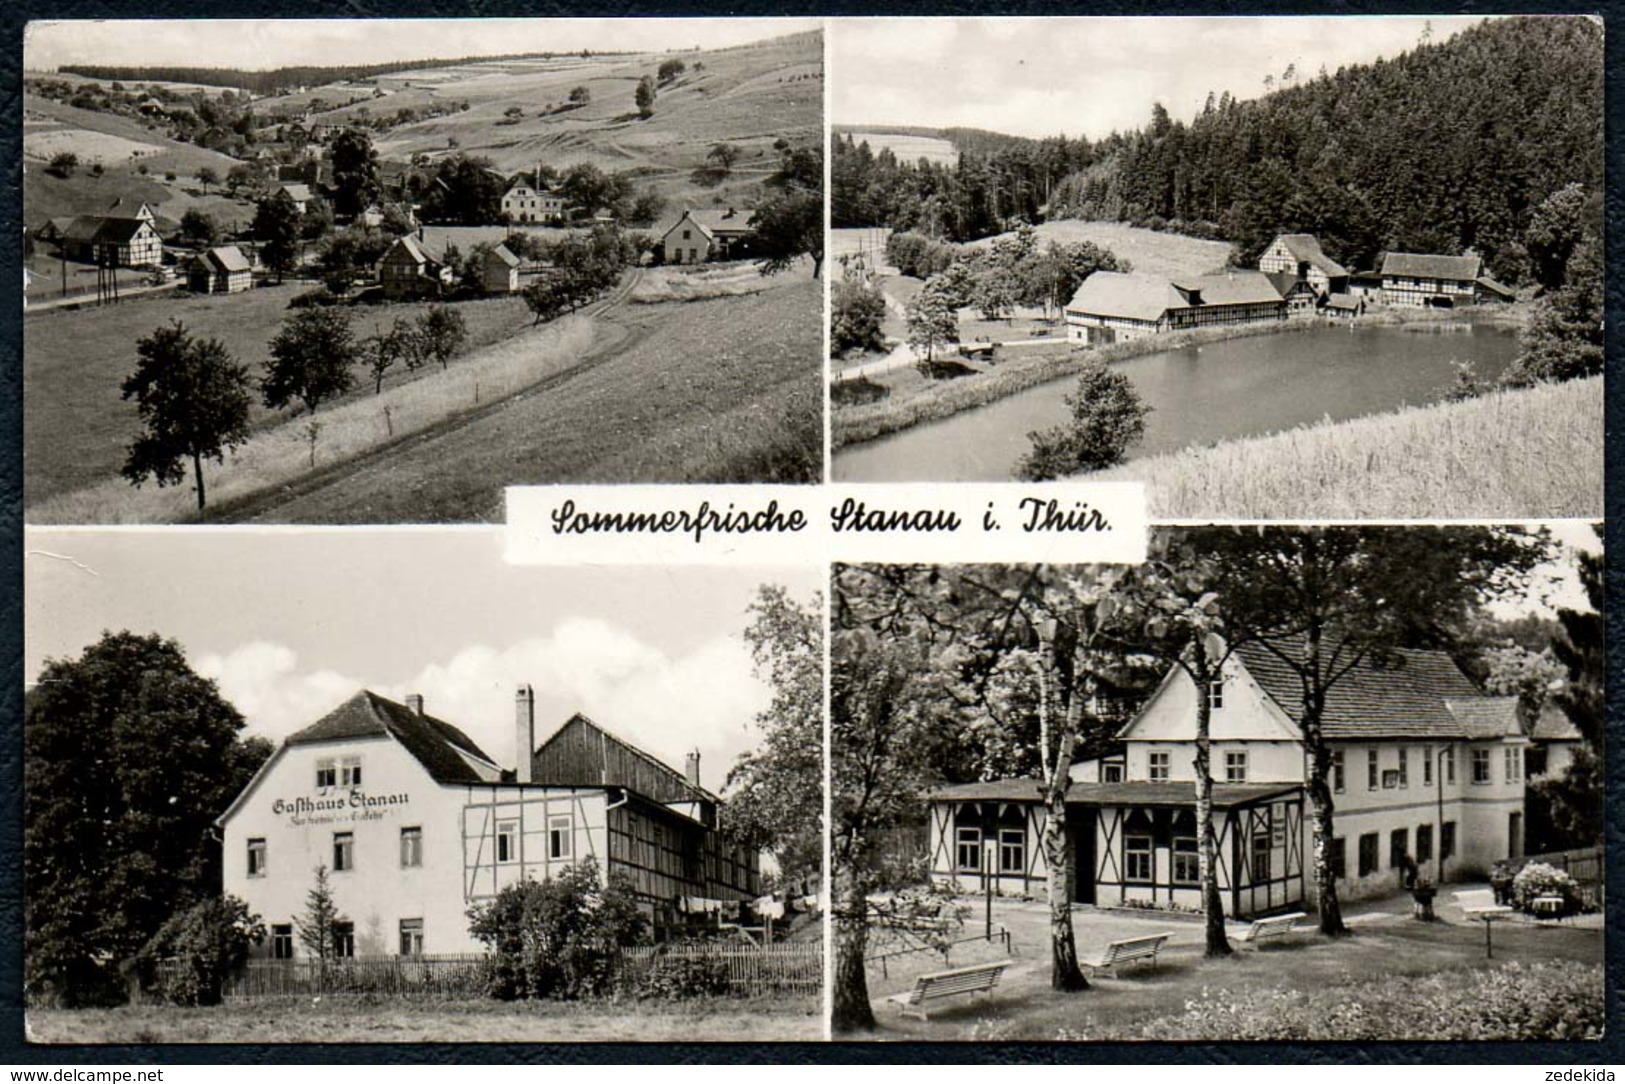 B0665 - Stanau - Gaststätte Gasthaus - Zur Fröhlichen Einkehr - Landpost Landpoststempel über Neustadt 1961 - Neustadt / Orla